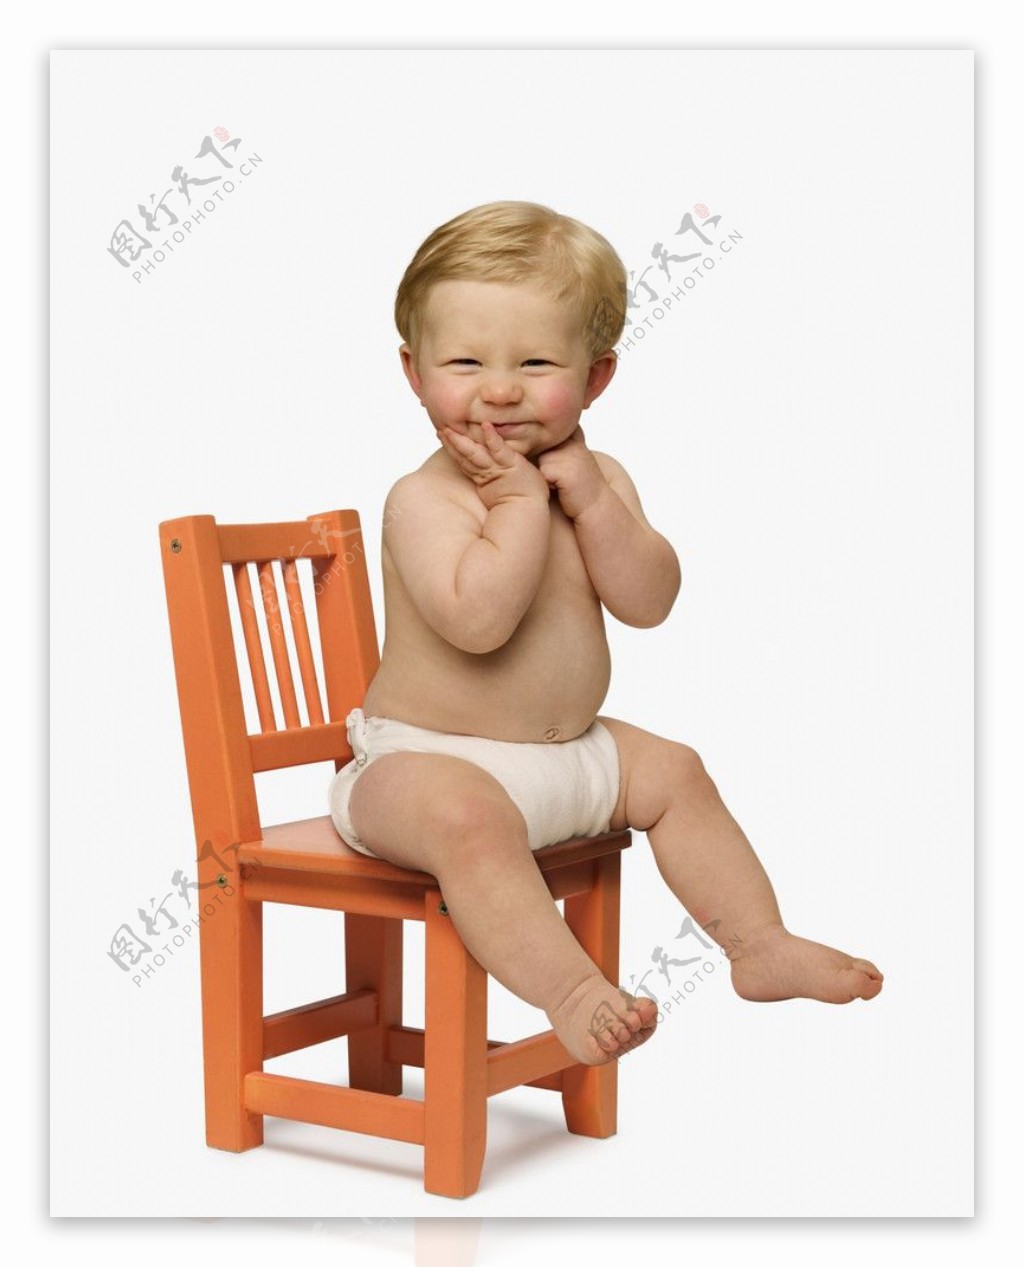 坐在小椅子上的可爱宝宝婴儿图片